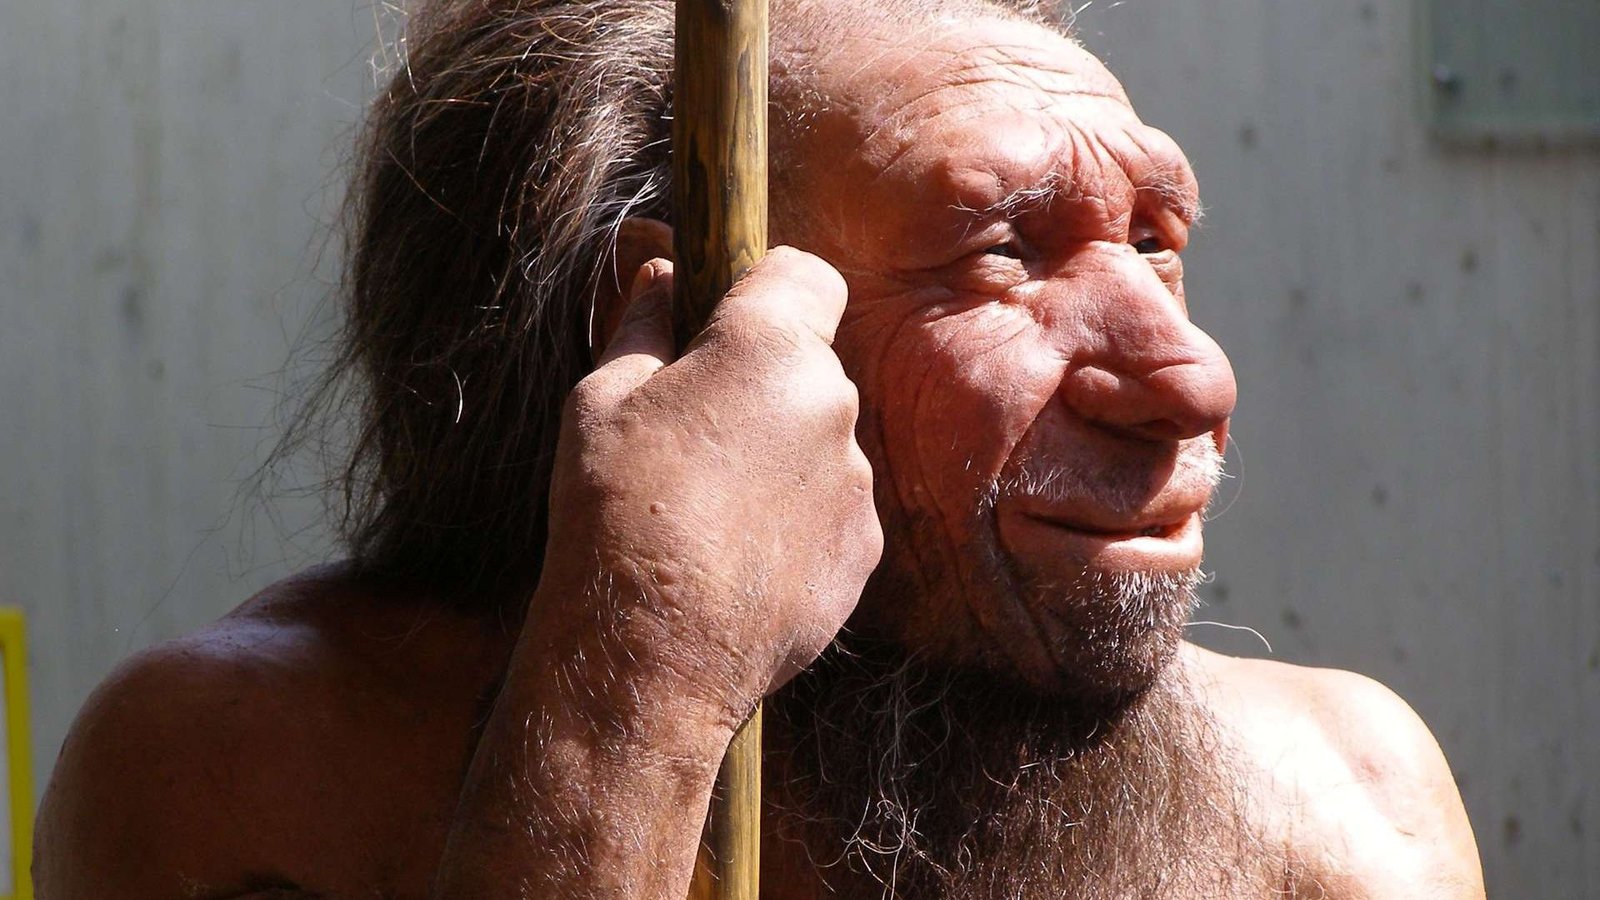 Neandertais podiam ouvir línguas humanas e falá-las, segundo seus fósseis